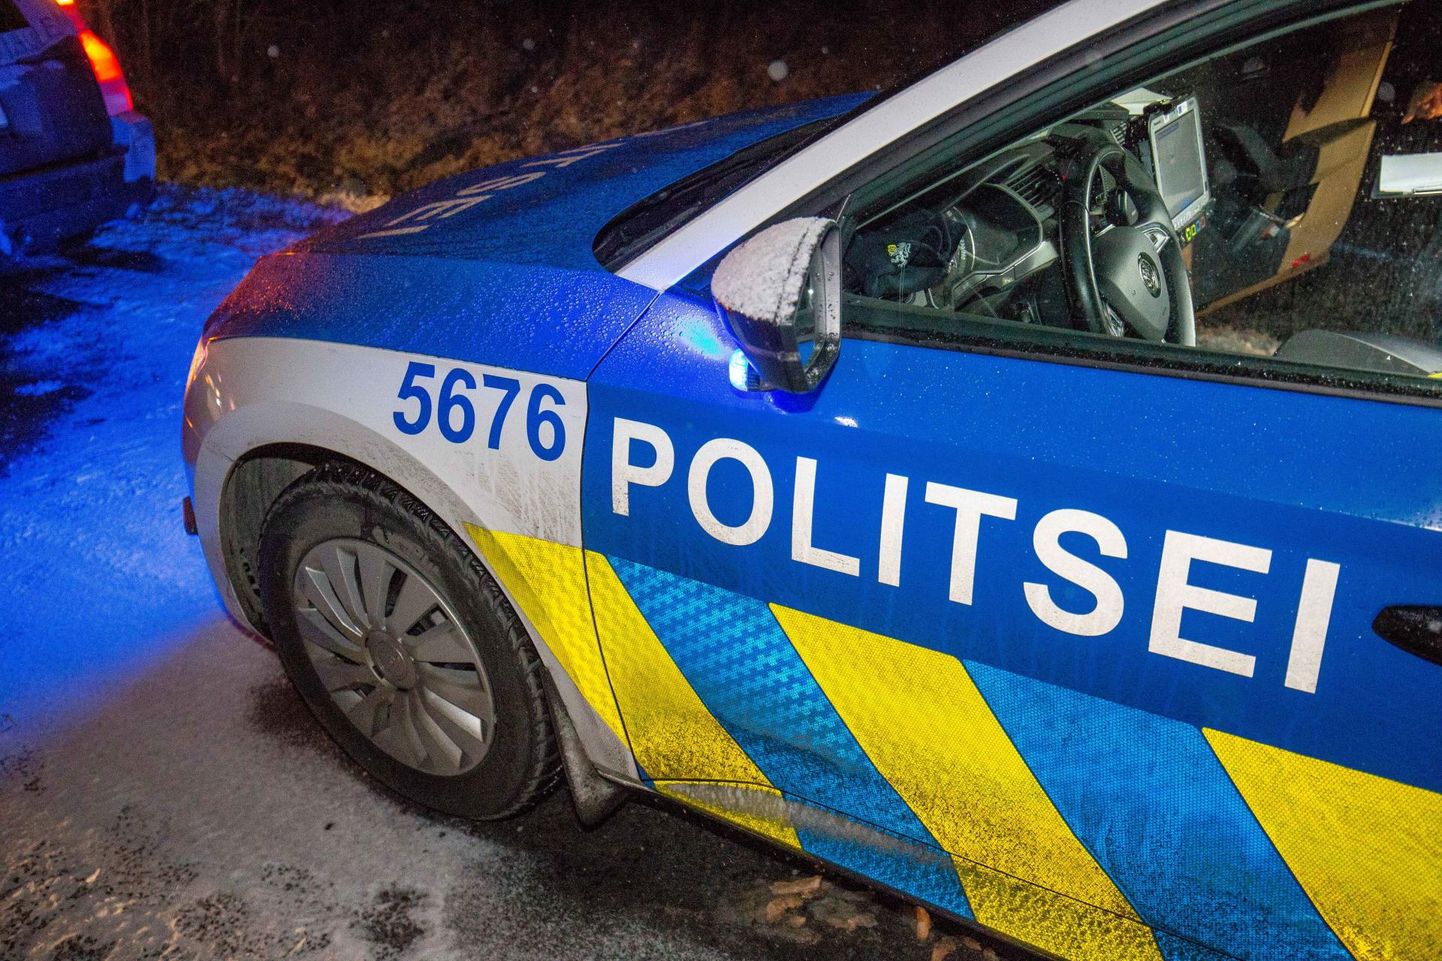 Täna tehti Pärnu eri paigus hulganisti puhumisreide. Kokku kontrolliti 1553 autojuhti, kellest kuus olid tarvitanud alkoholi. Pilt on illustreeriv.